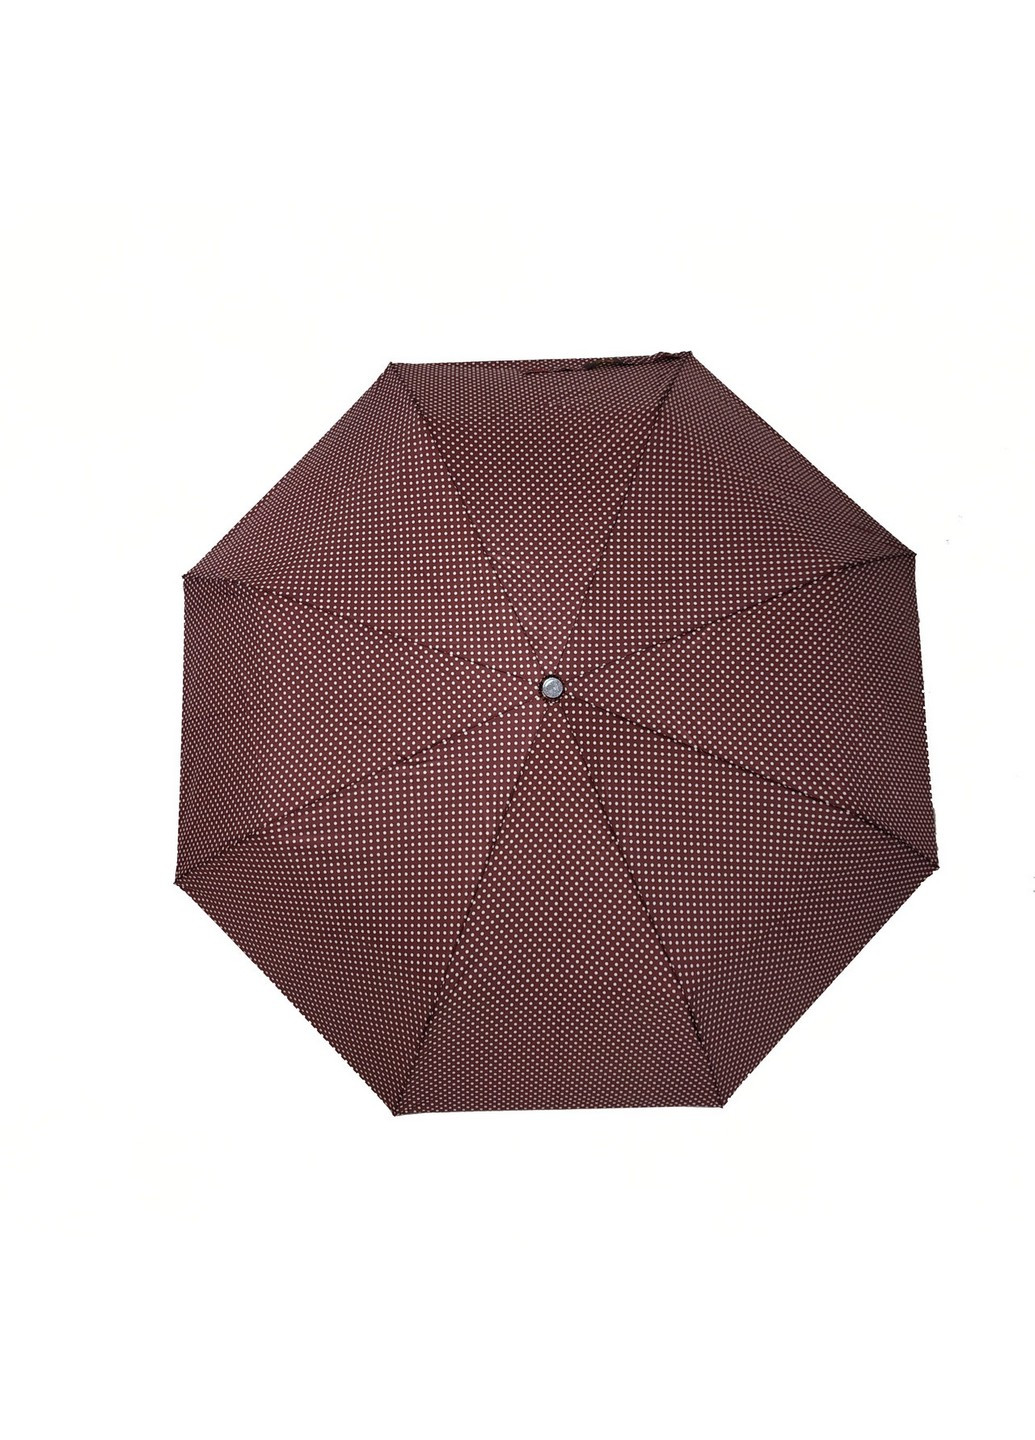 Женский зонт механический 97 см SL (259206106)